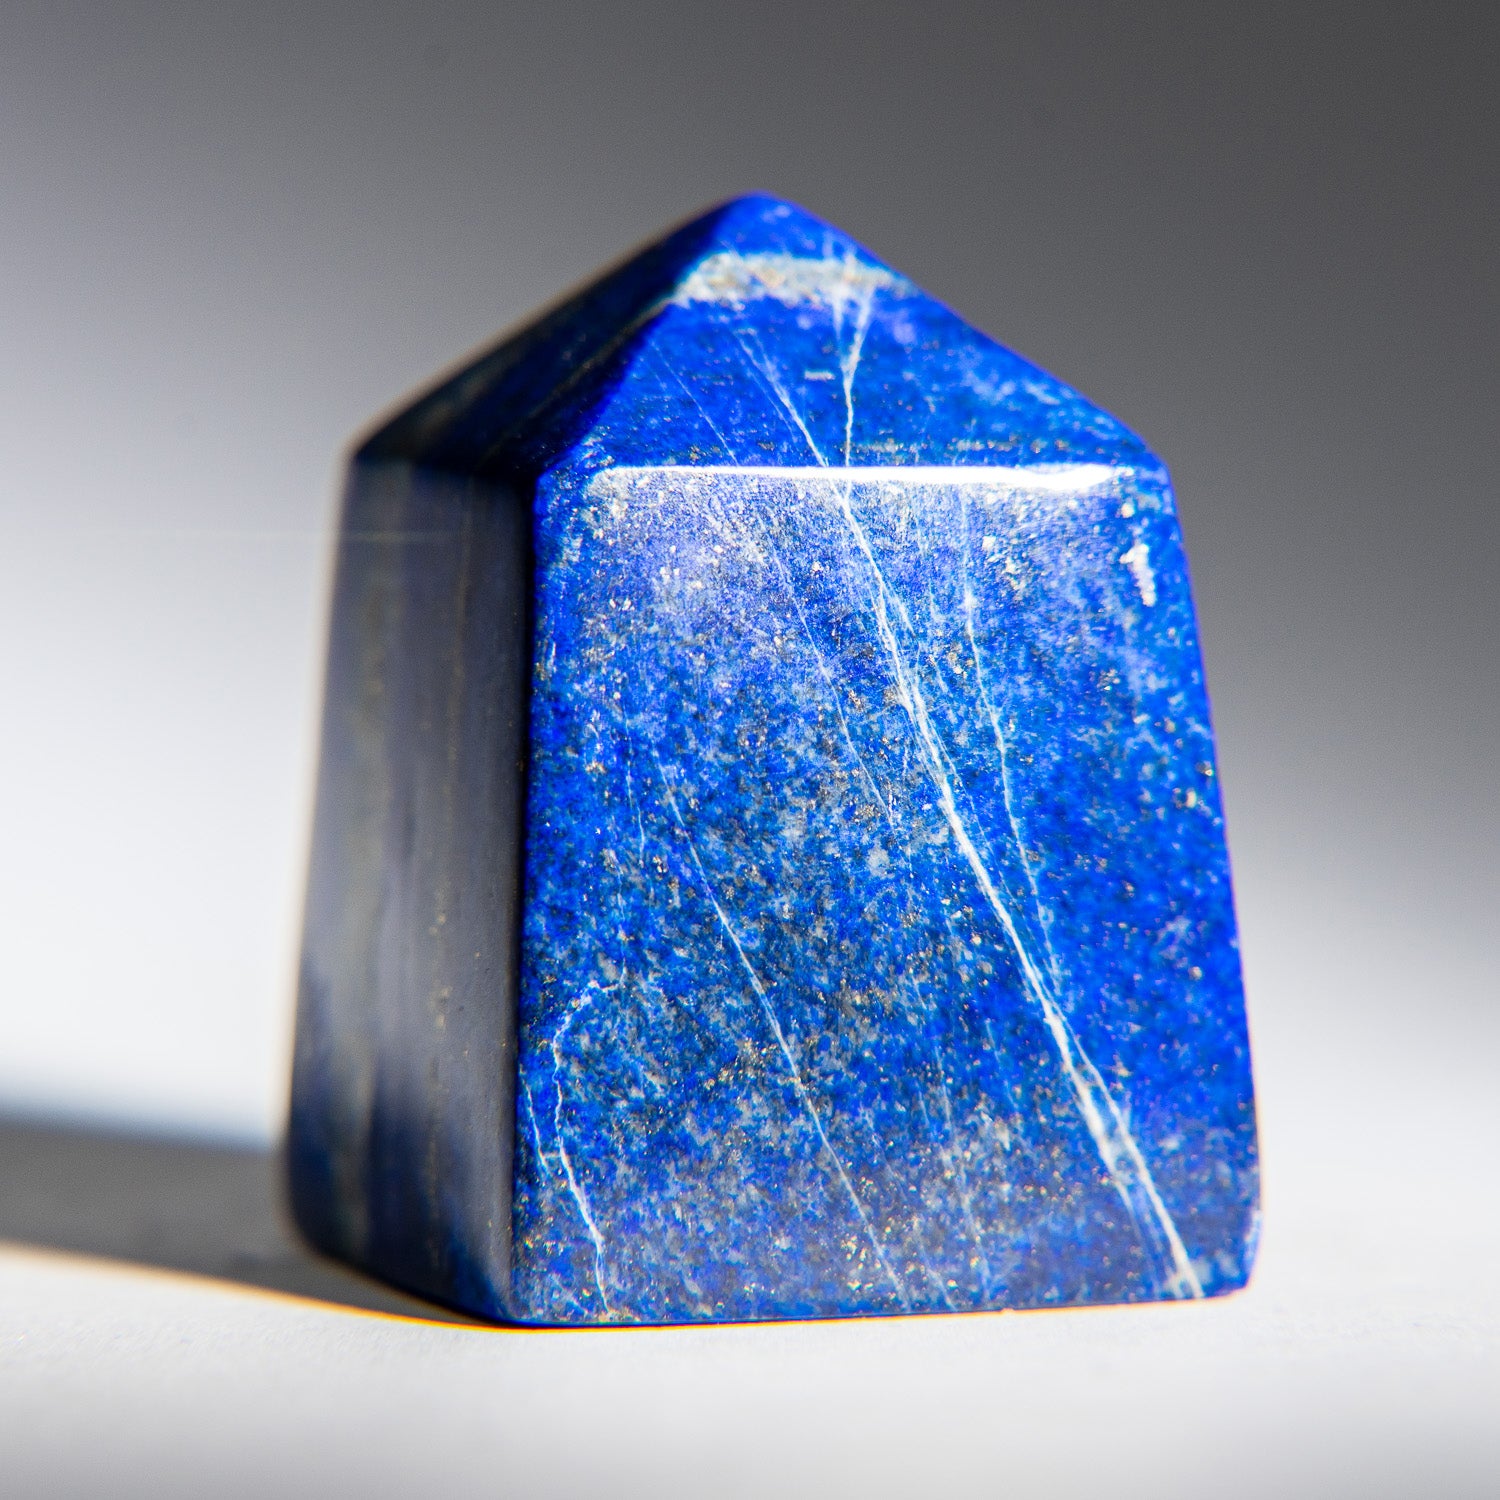 Polished Lapis Lazuli Obelisk from Afghanistan (159 grams)